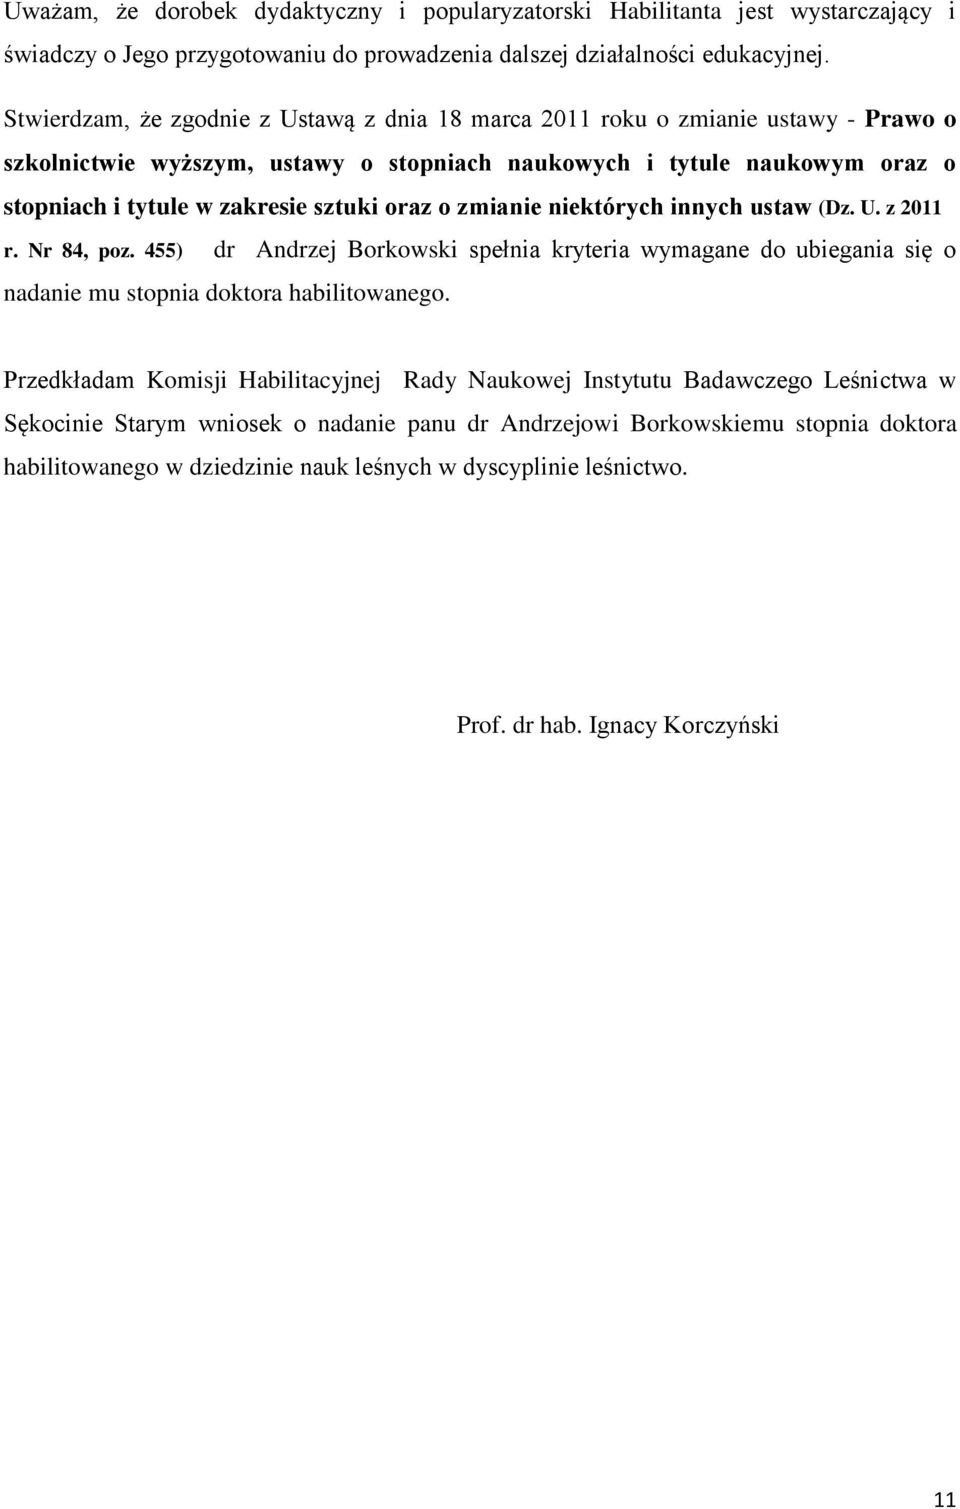 oraz o zmianie niektórych innych ustaw (Dz. U. z 2011 r. Nr 84, poz. 455) dr Andrzej Borkowski spełnia kryteria wymagane do ubiegania się o nadanie mu stopnia doktora habilitowanego.